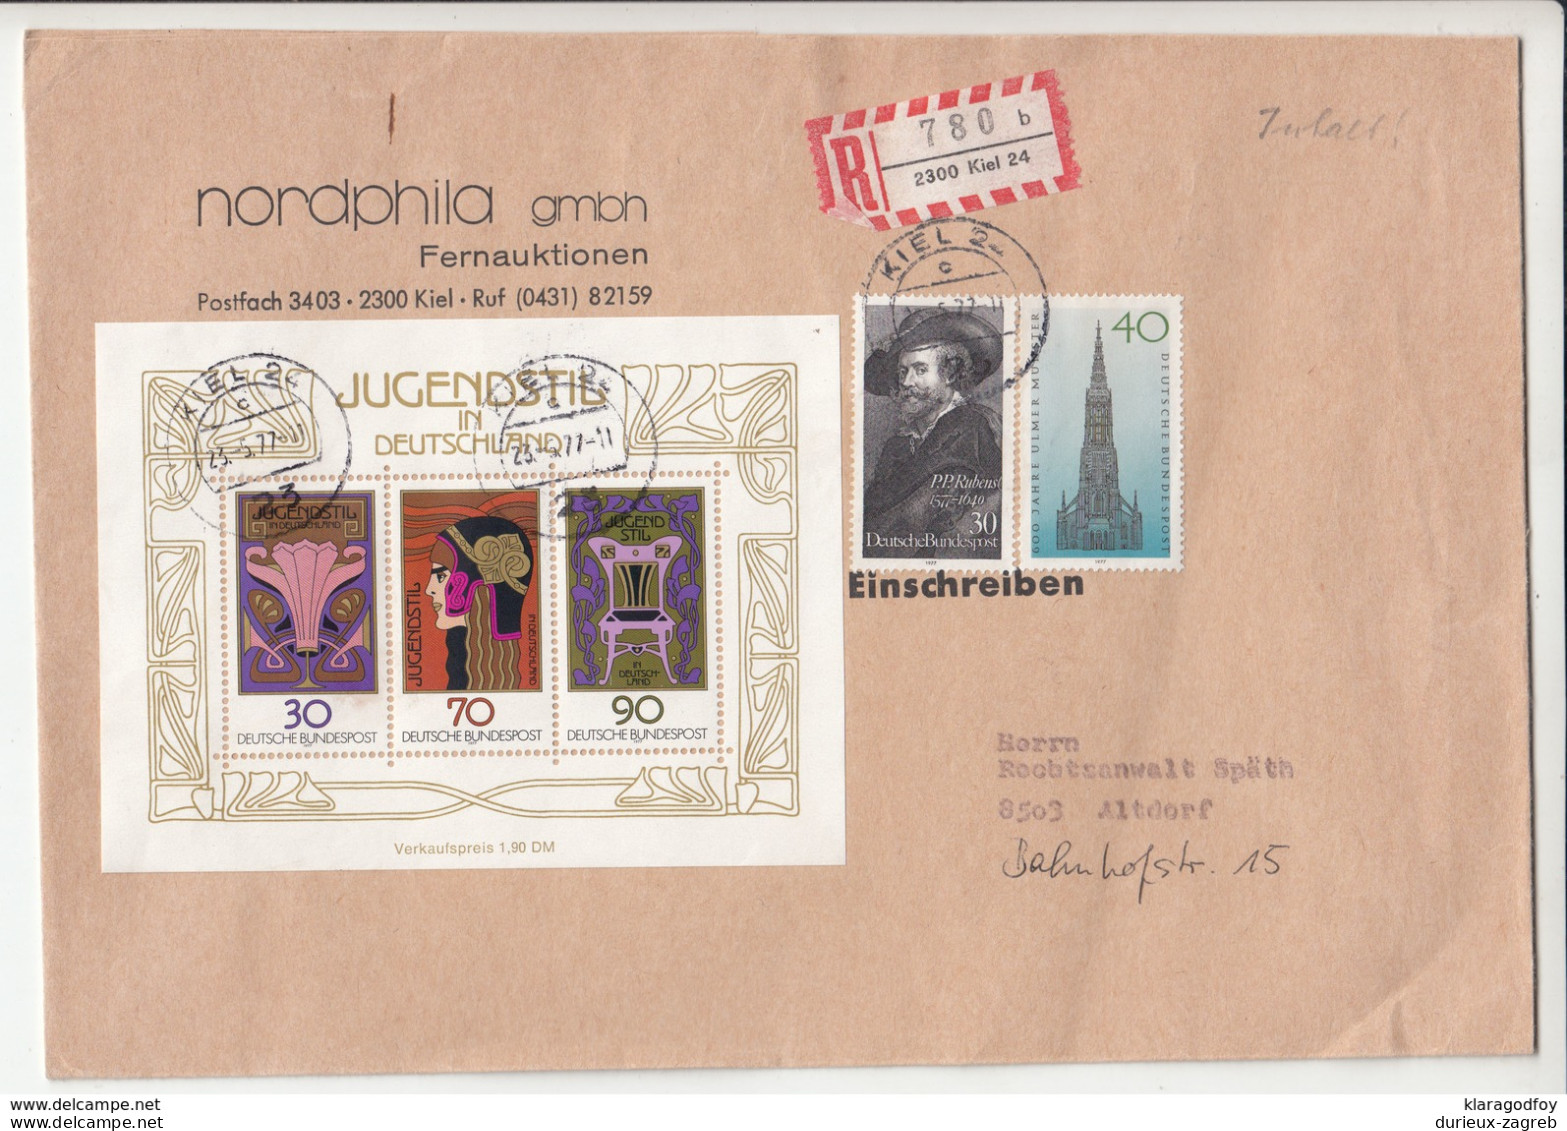 Germany, Jugendstil Souvernir Sheet On Nordhphila Letter Cover Registered Travelled 1977 Kiel Pmk B190101 - Lettres & Documents